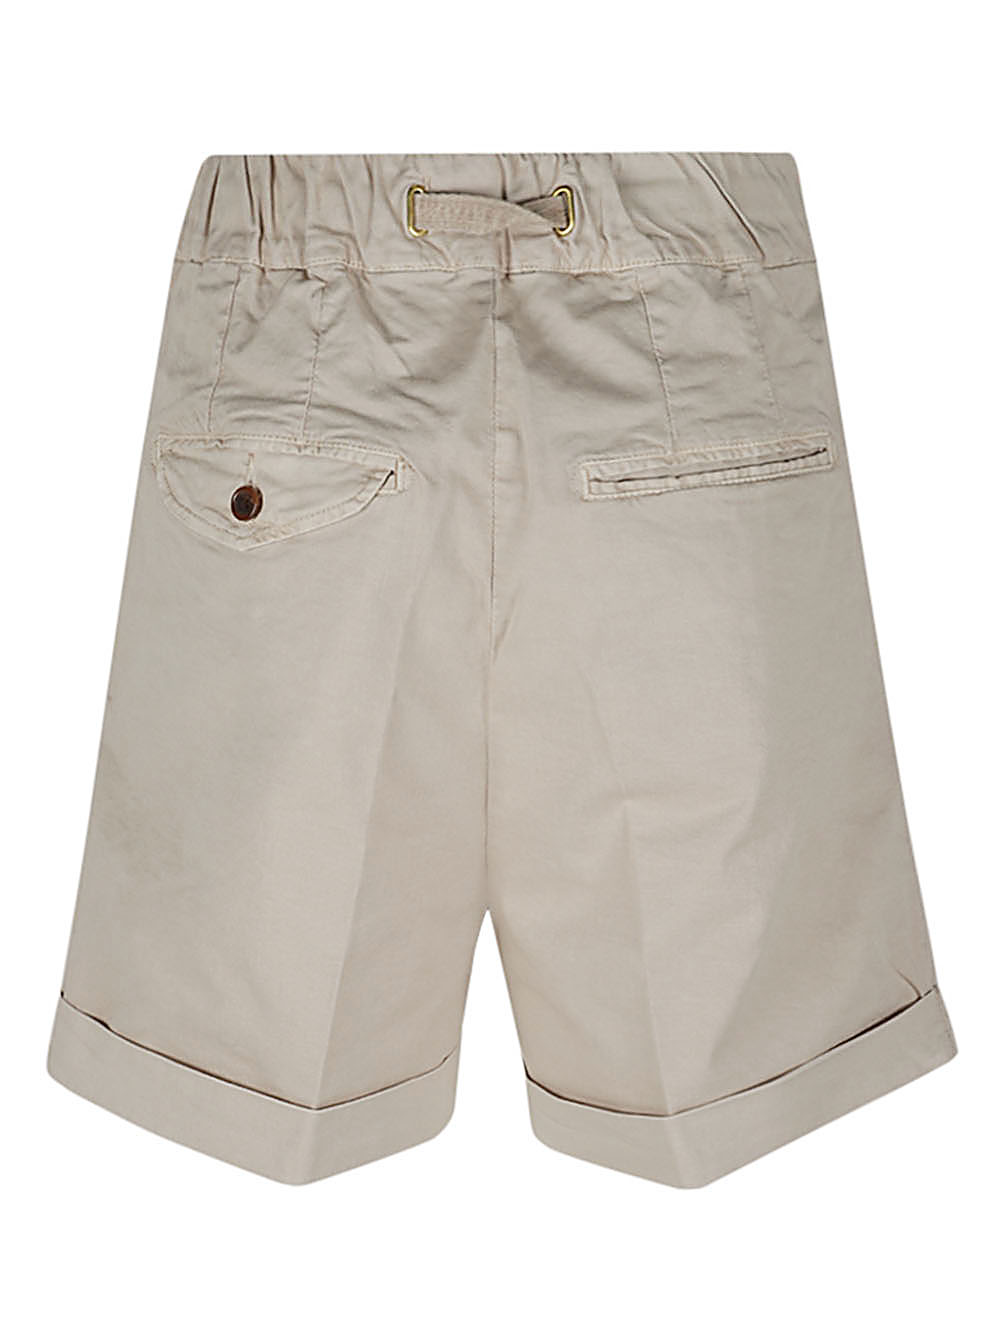 White Sand WHITE SAND- Cotton Shorts